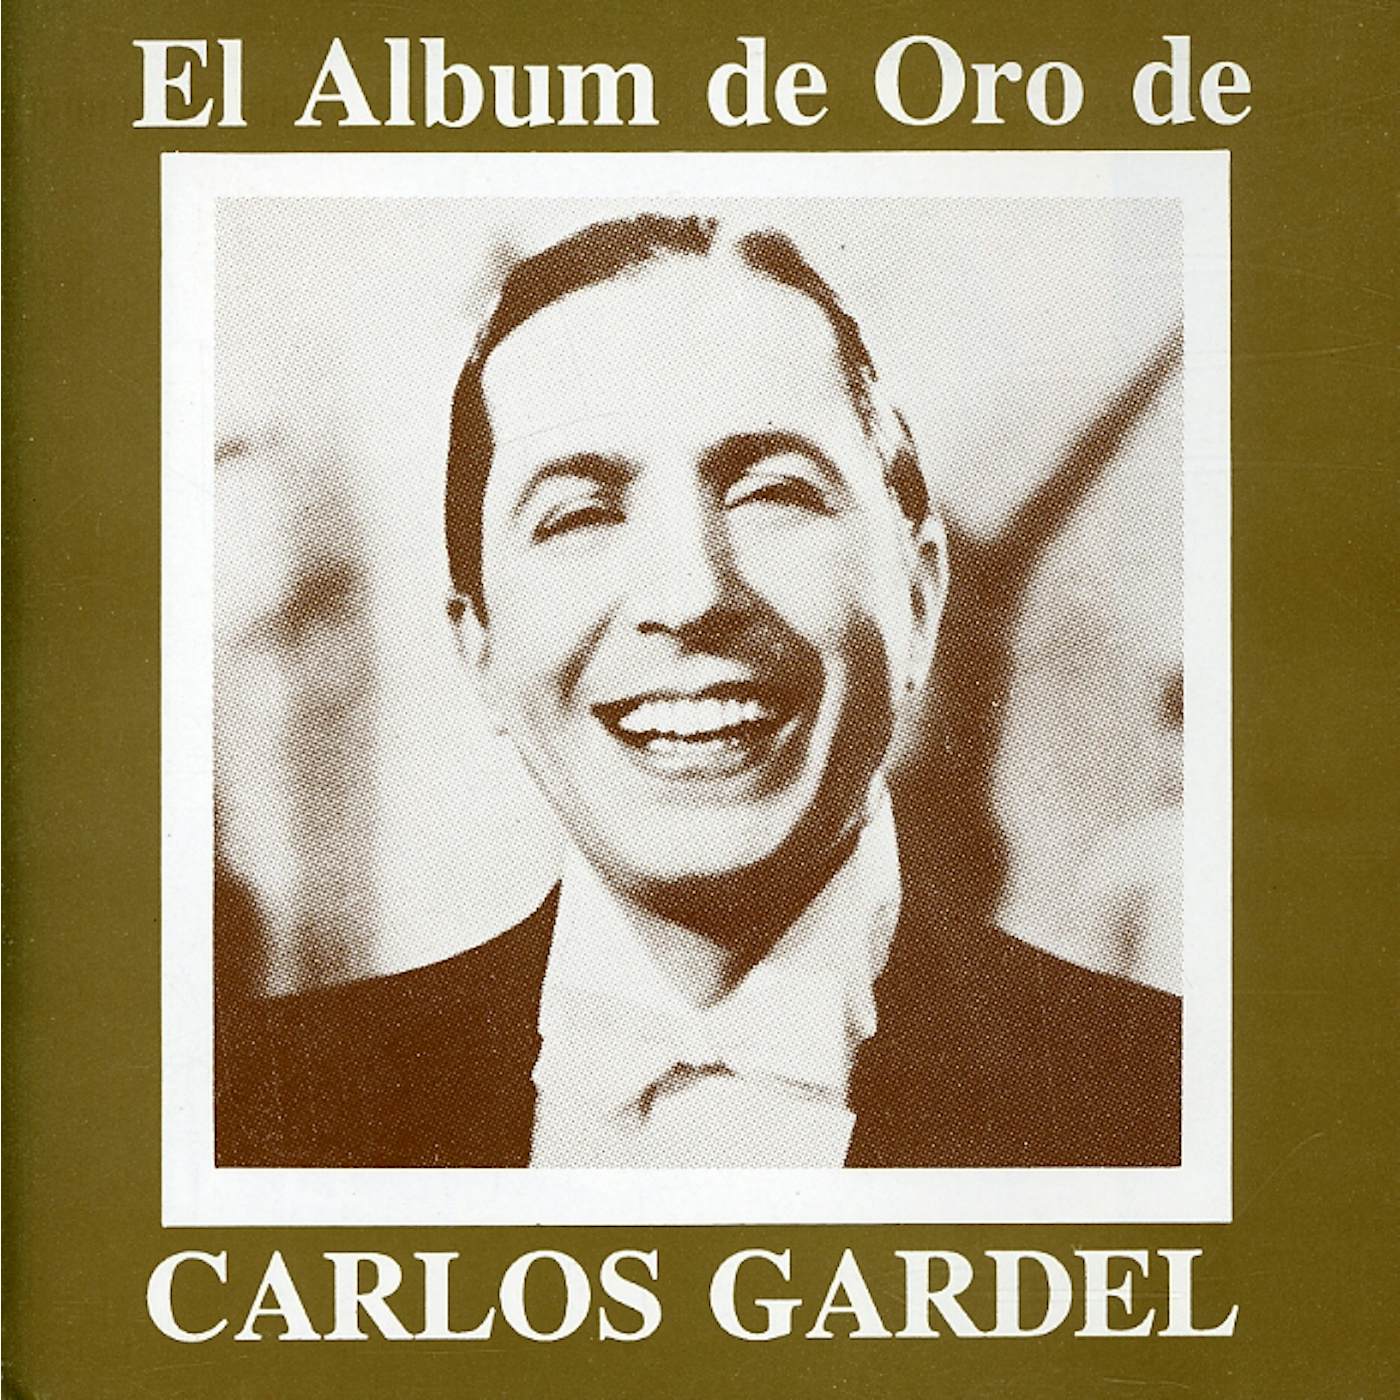 Carlos Gardel EL ALBUM DE ORO DE CD